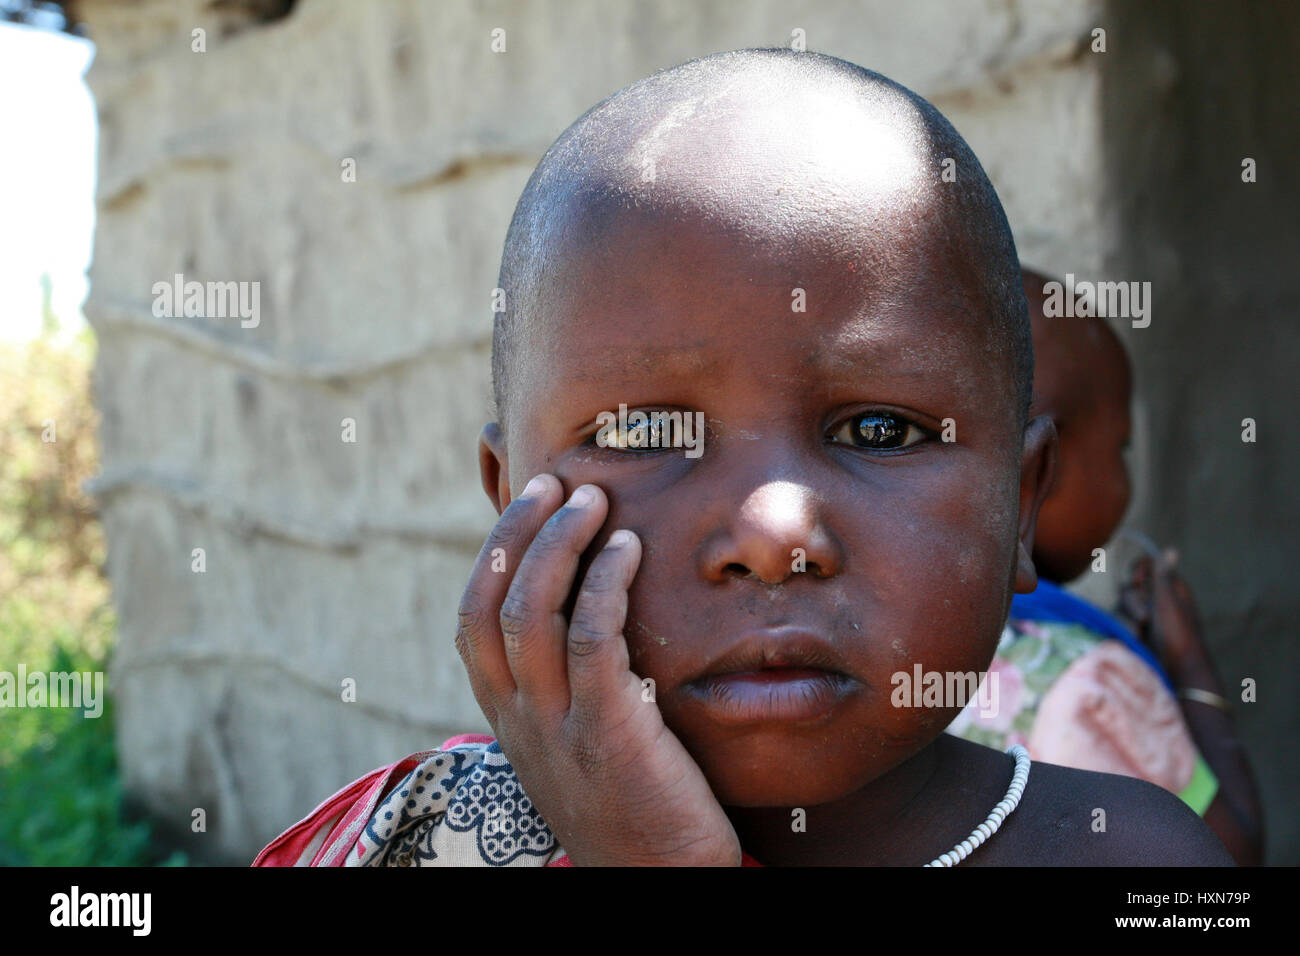 Meserani Snake Park, Arusha, Tansania - 14. Februar 2008: Nahaufnahme Porträt eines unbekannten schwarzen Mädchen drei Jahre alt, mit einem schmutzigen Gesicht, traurig, befindet sich Stockfoto